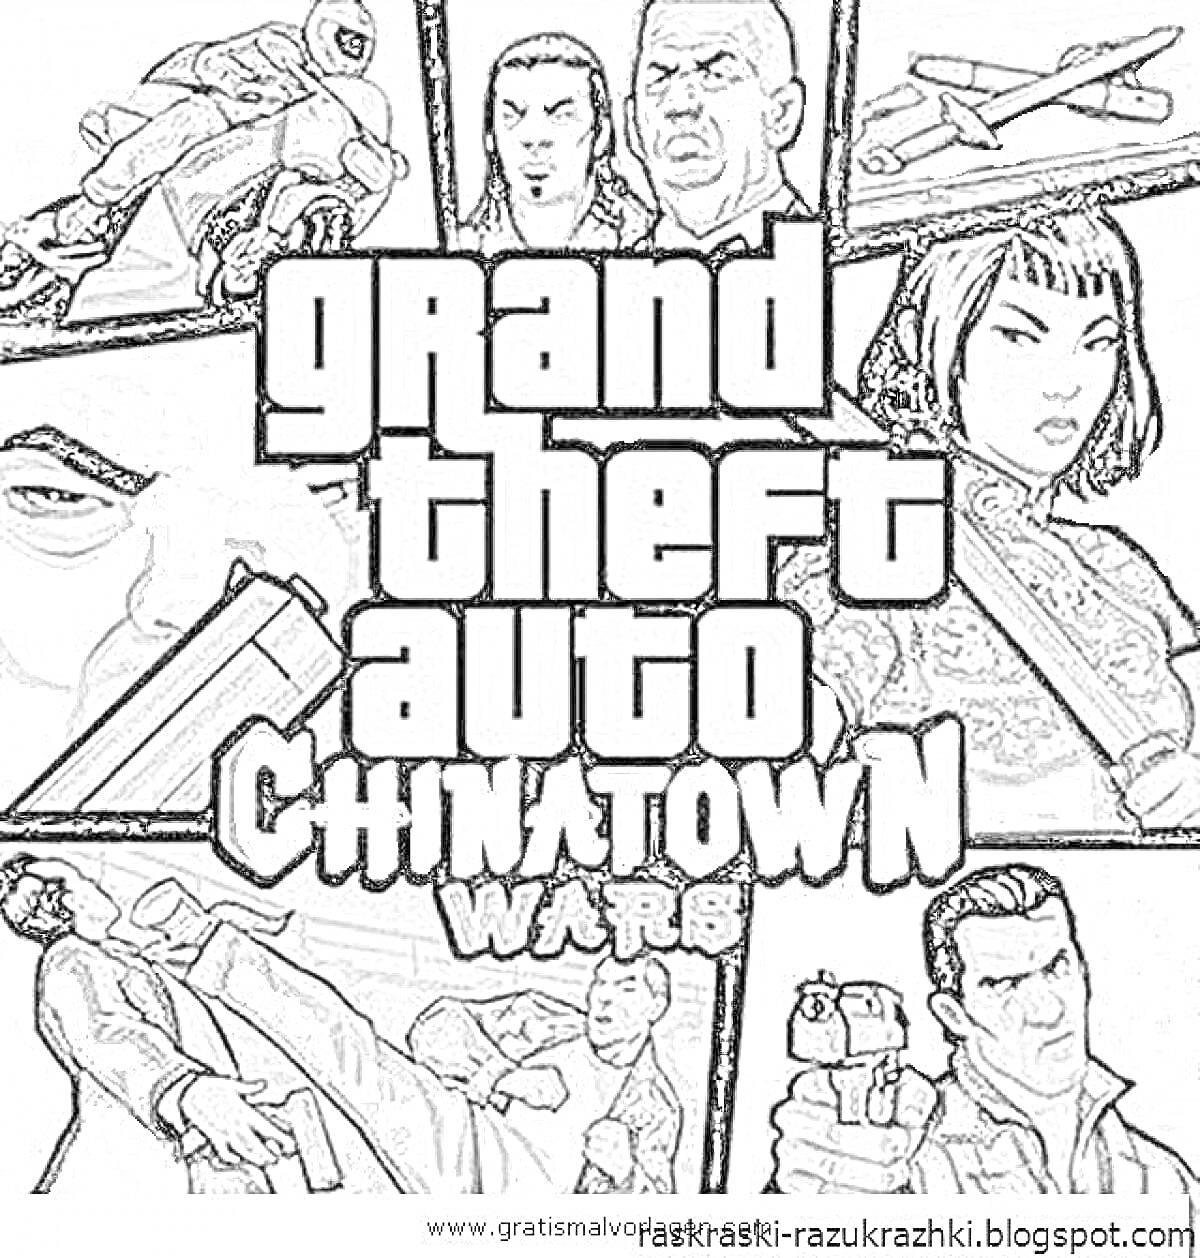 Grand Theft Auto Chinatown Wars с изображением сцены с наездником на мотоцикле, автомобильной погони и различных персонажей